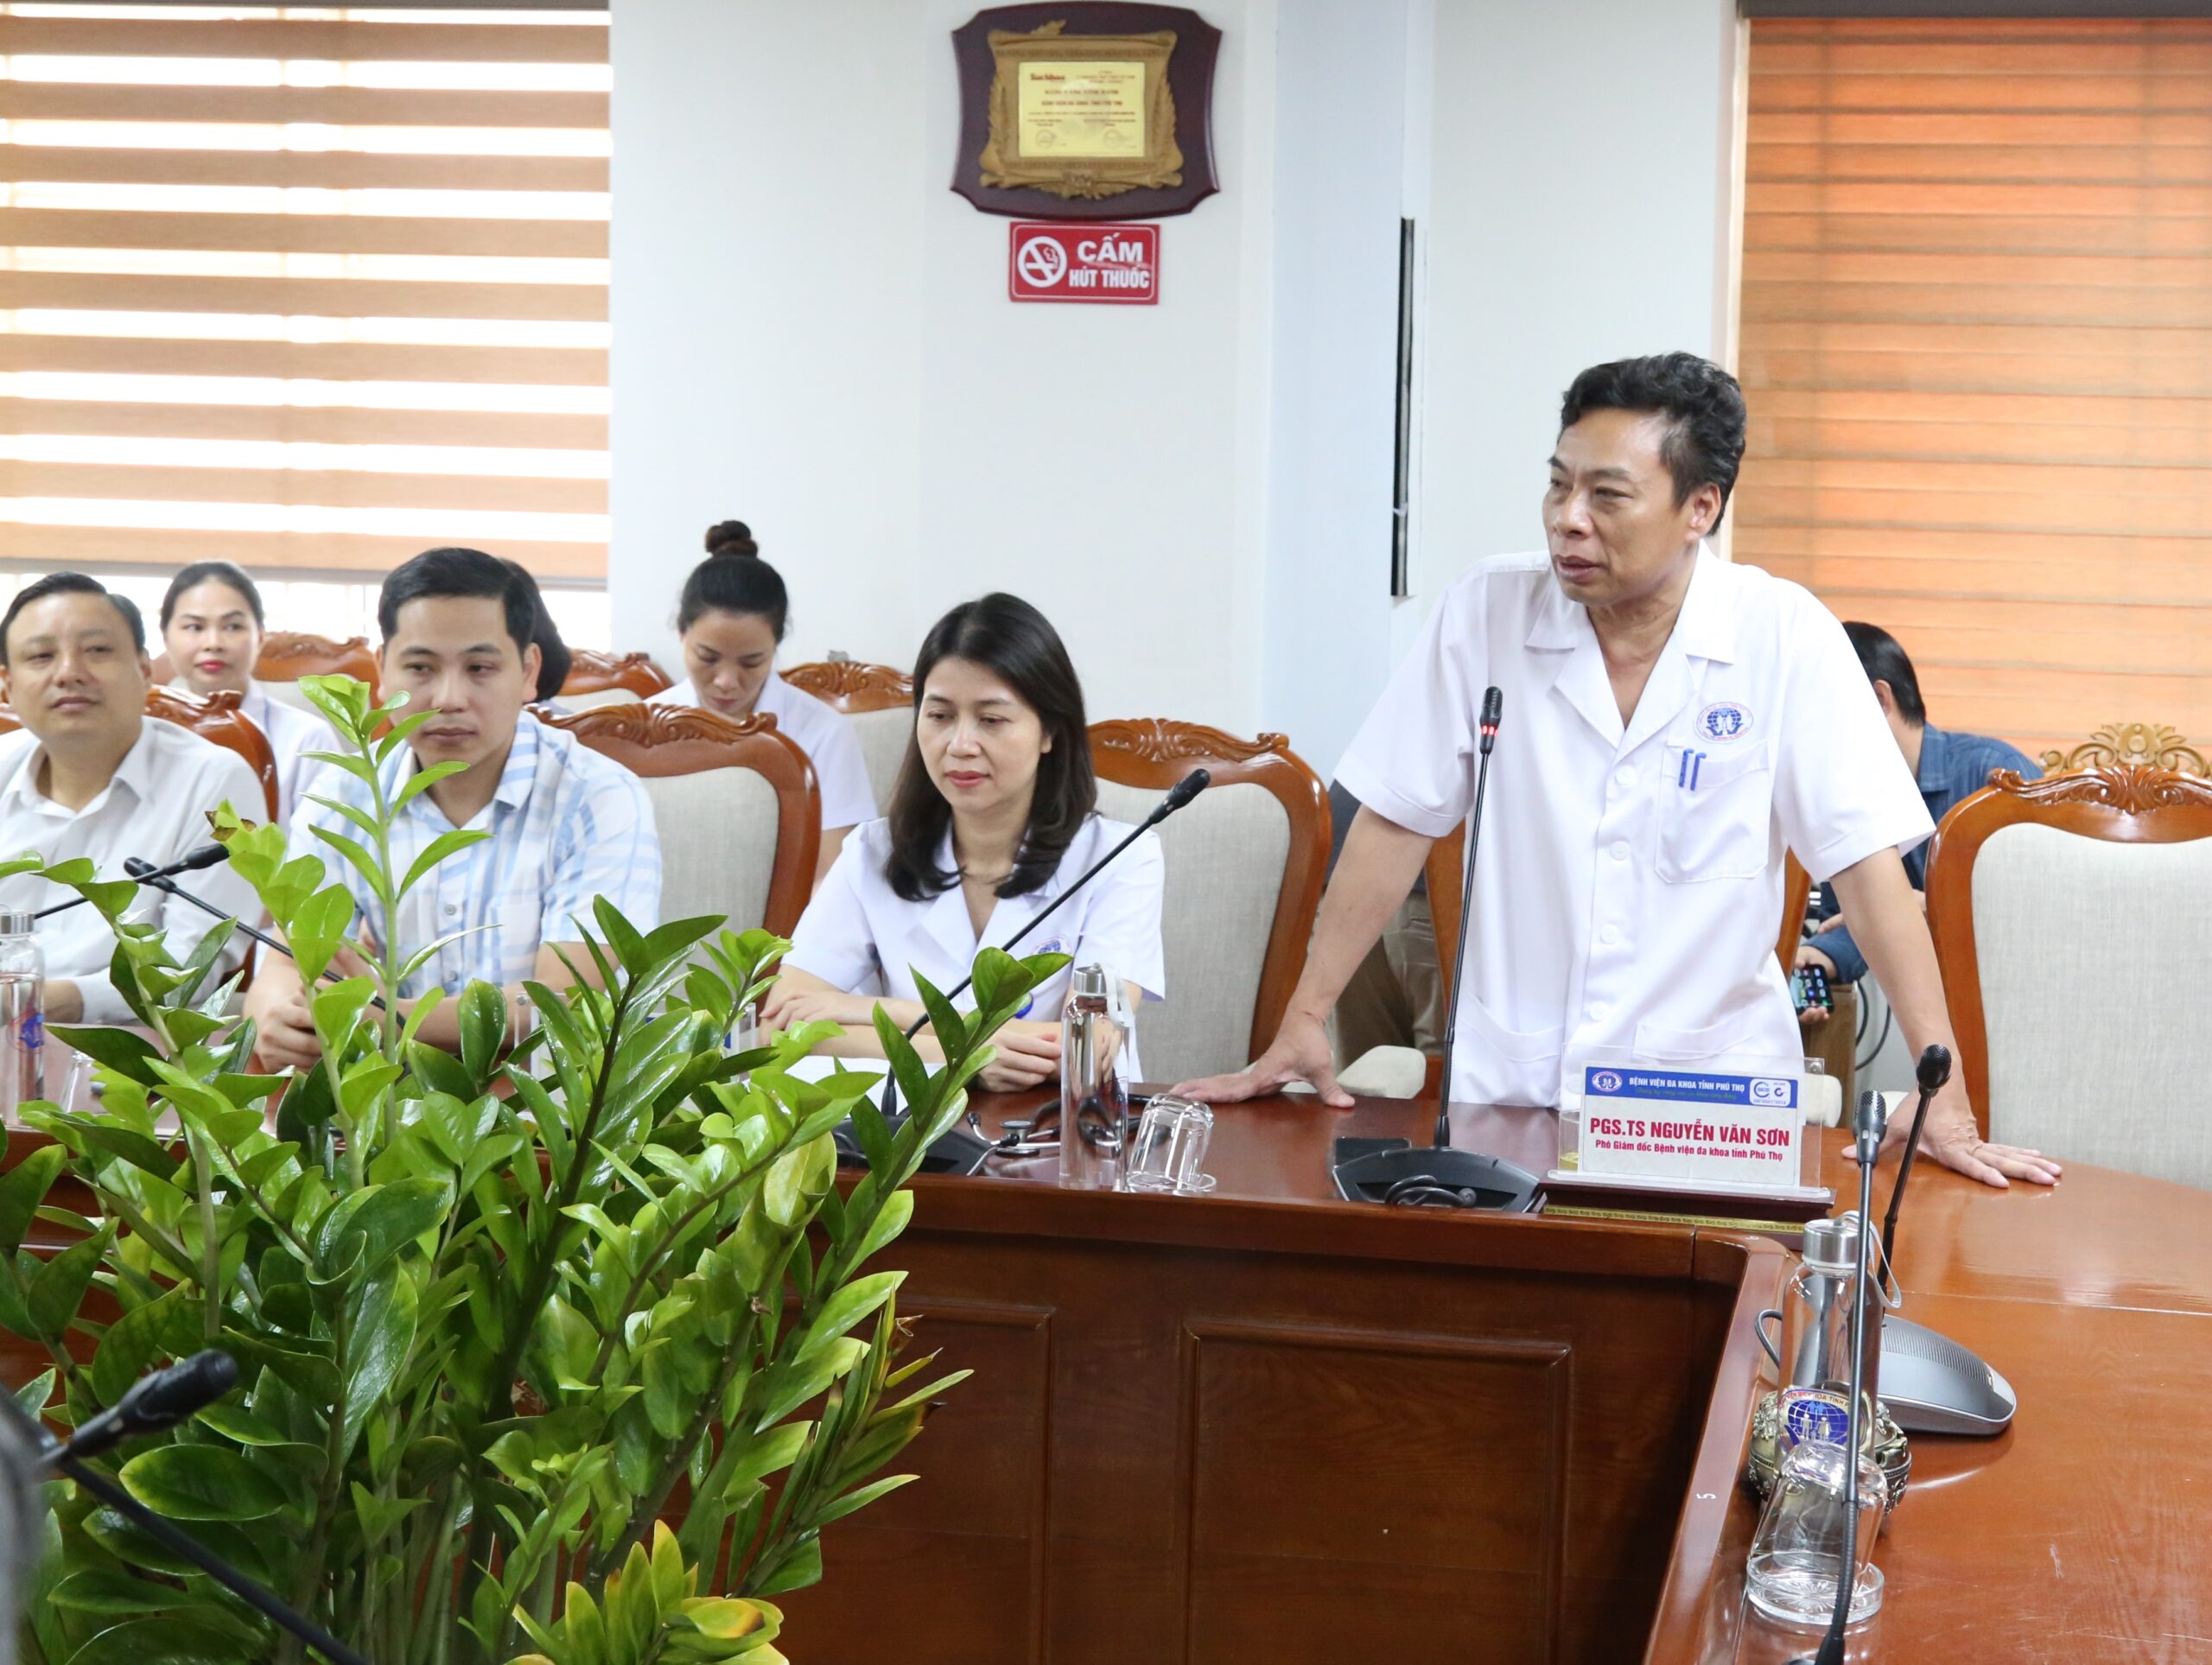 PGS.TS Nguyễn Văn Sơn - Phó Giám đốc Bệnh viện Đa khoa tỉnh Phú Thọ phát biểu tại chương trình